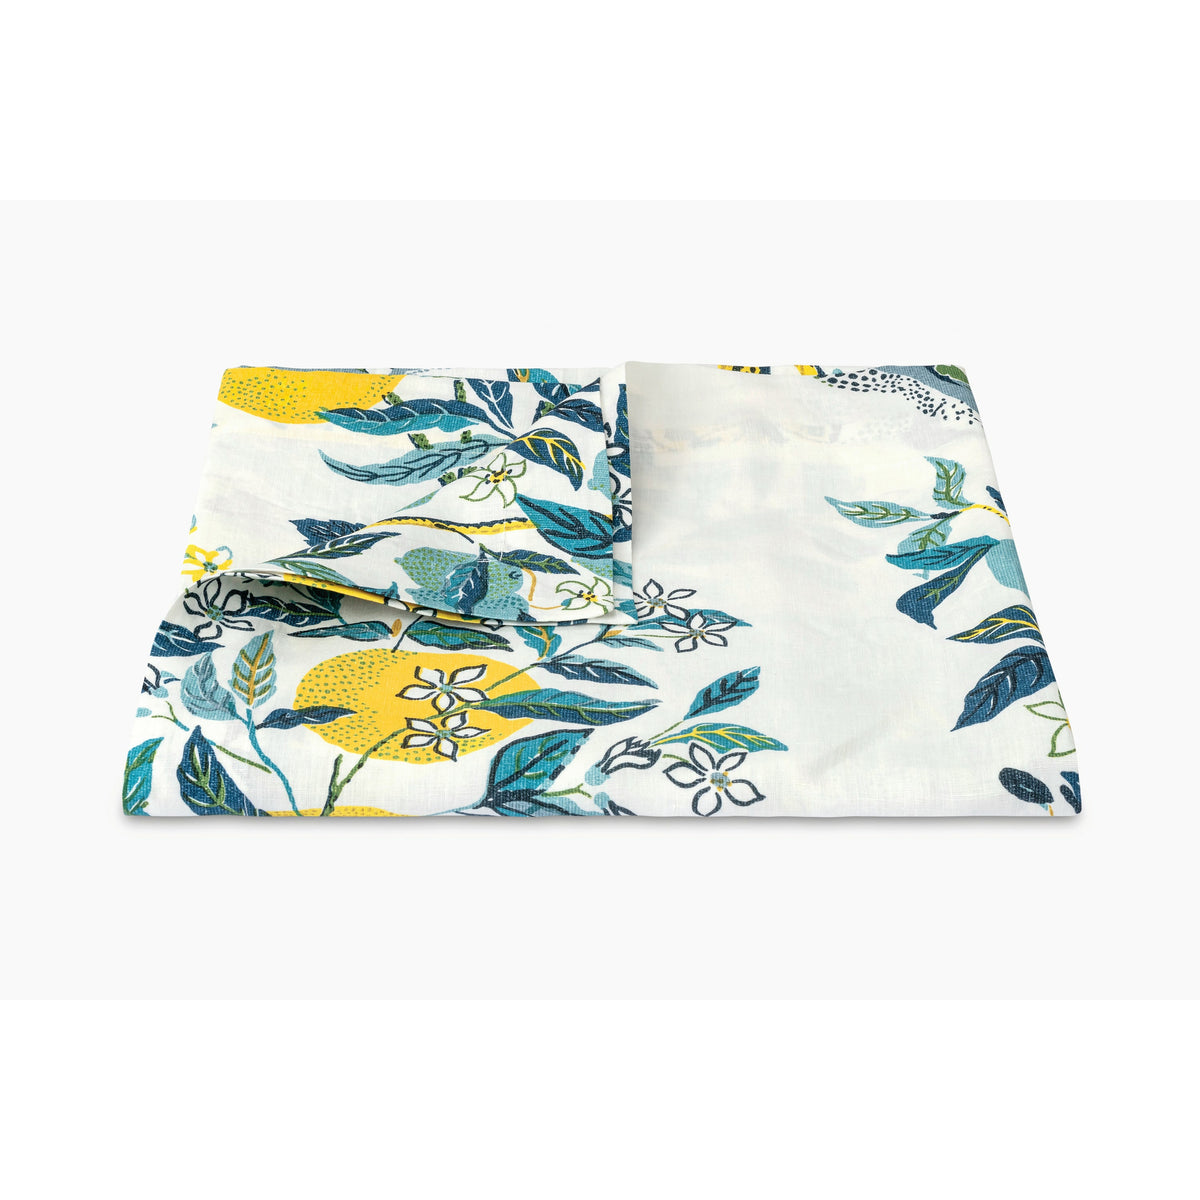 Matouk Schumacher Citrus Garden Table Linens Table Cloth Pool Fine Linens